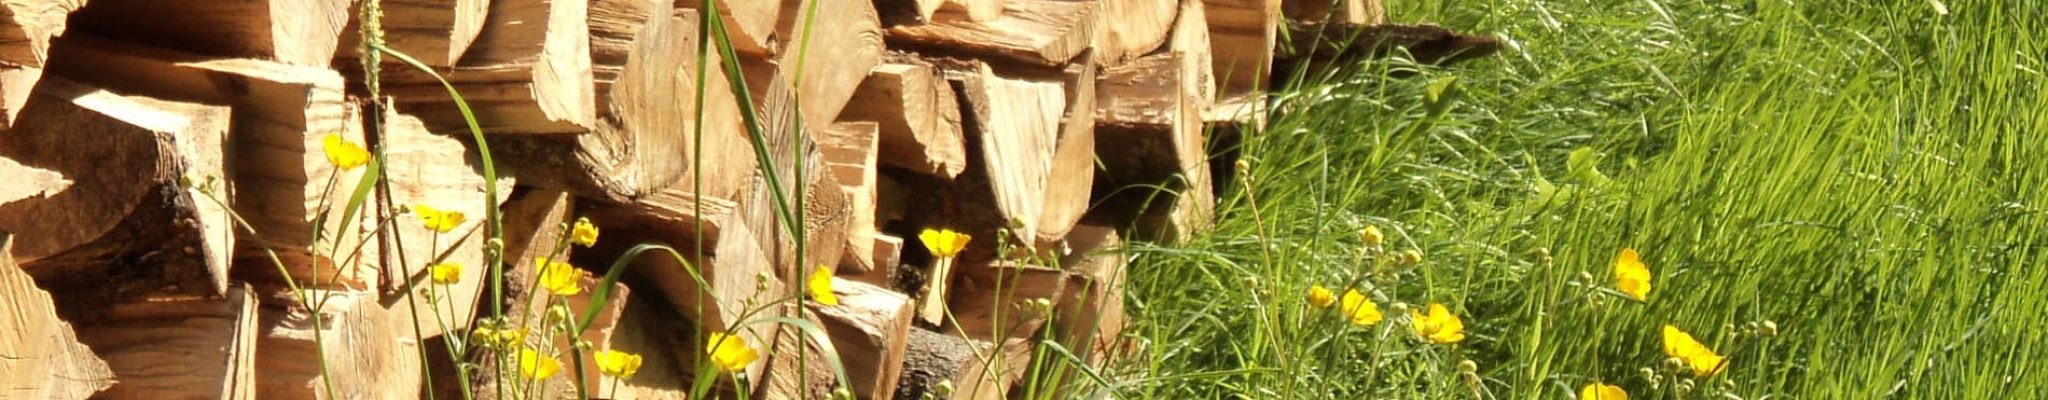 Holzstapel in Blumenwiese